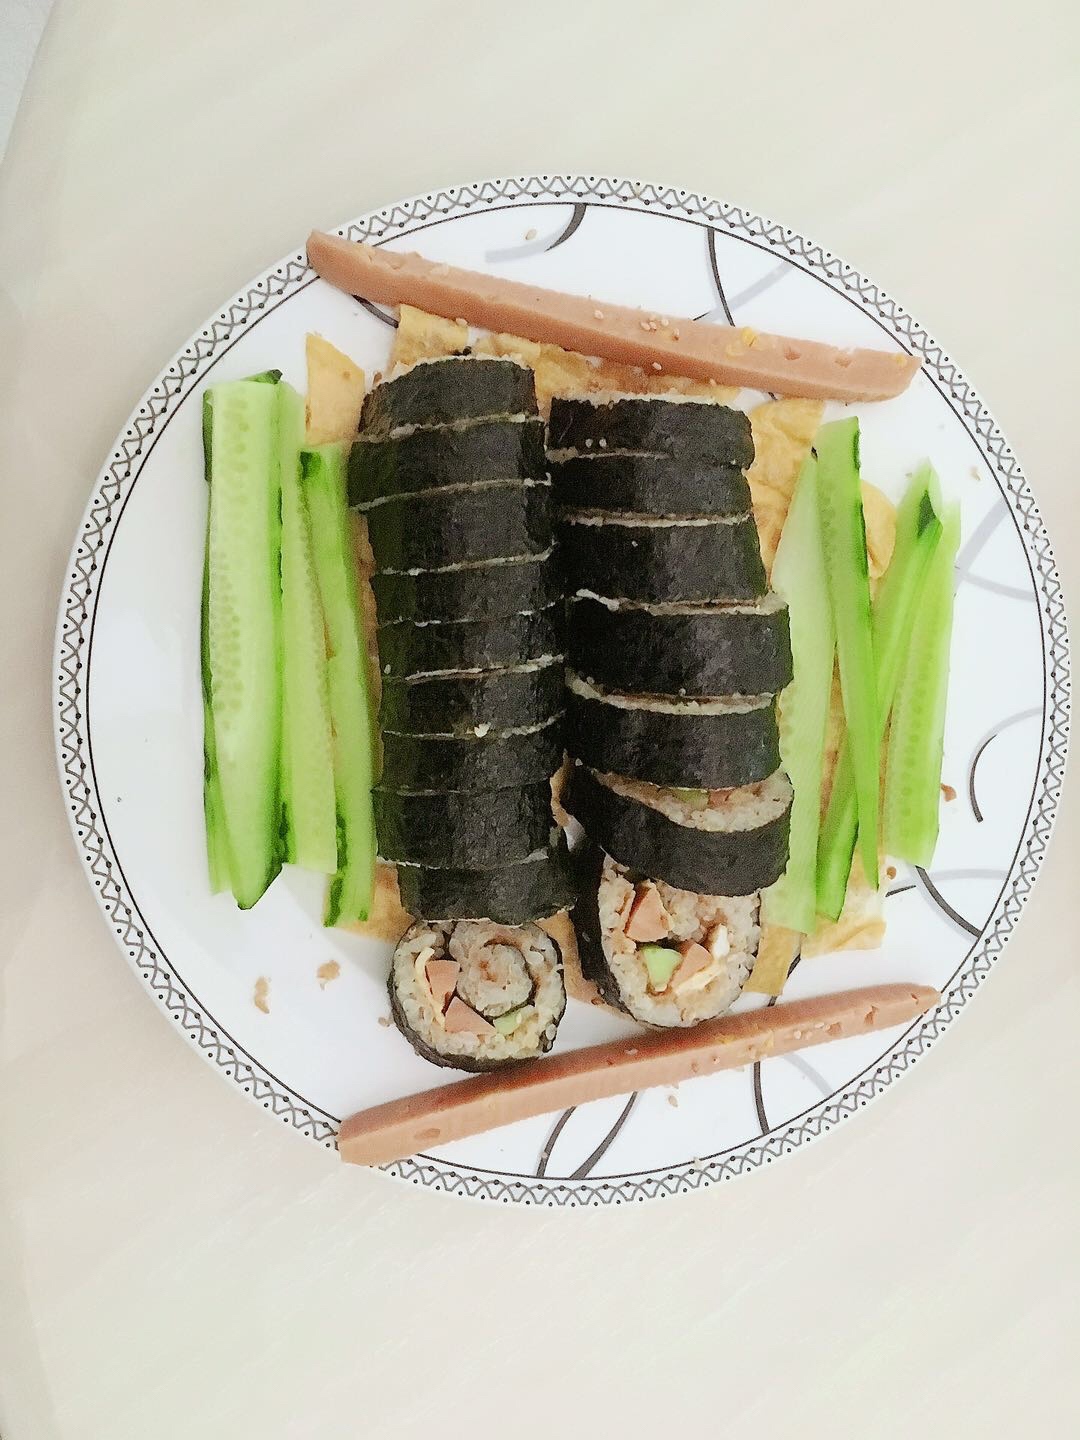 寿司卷的做法